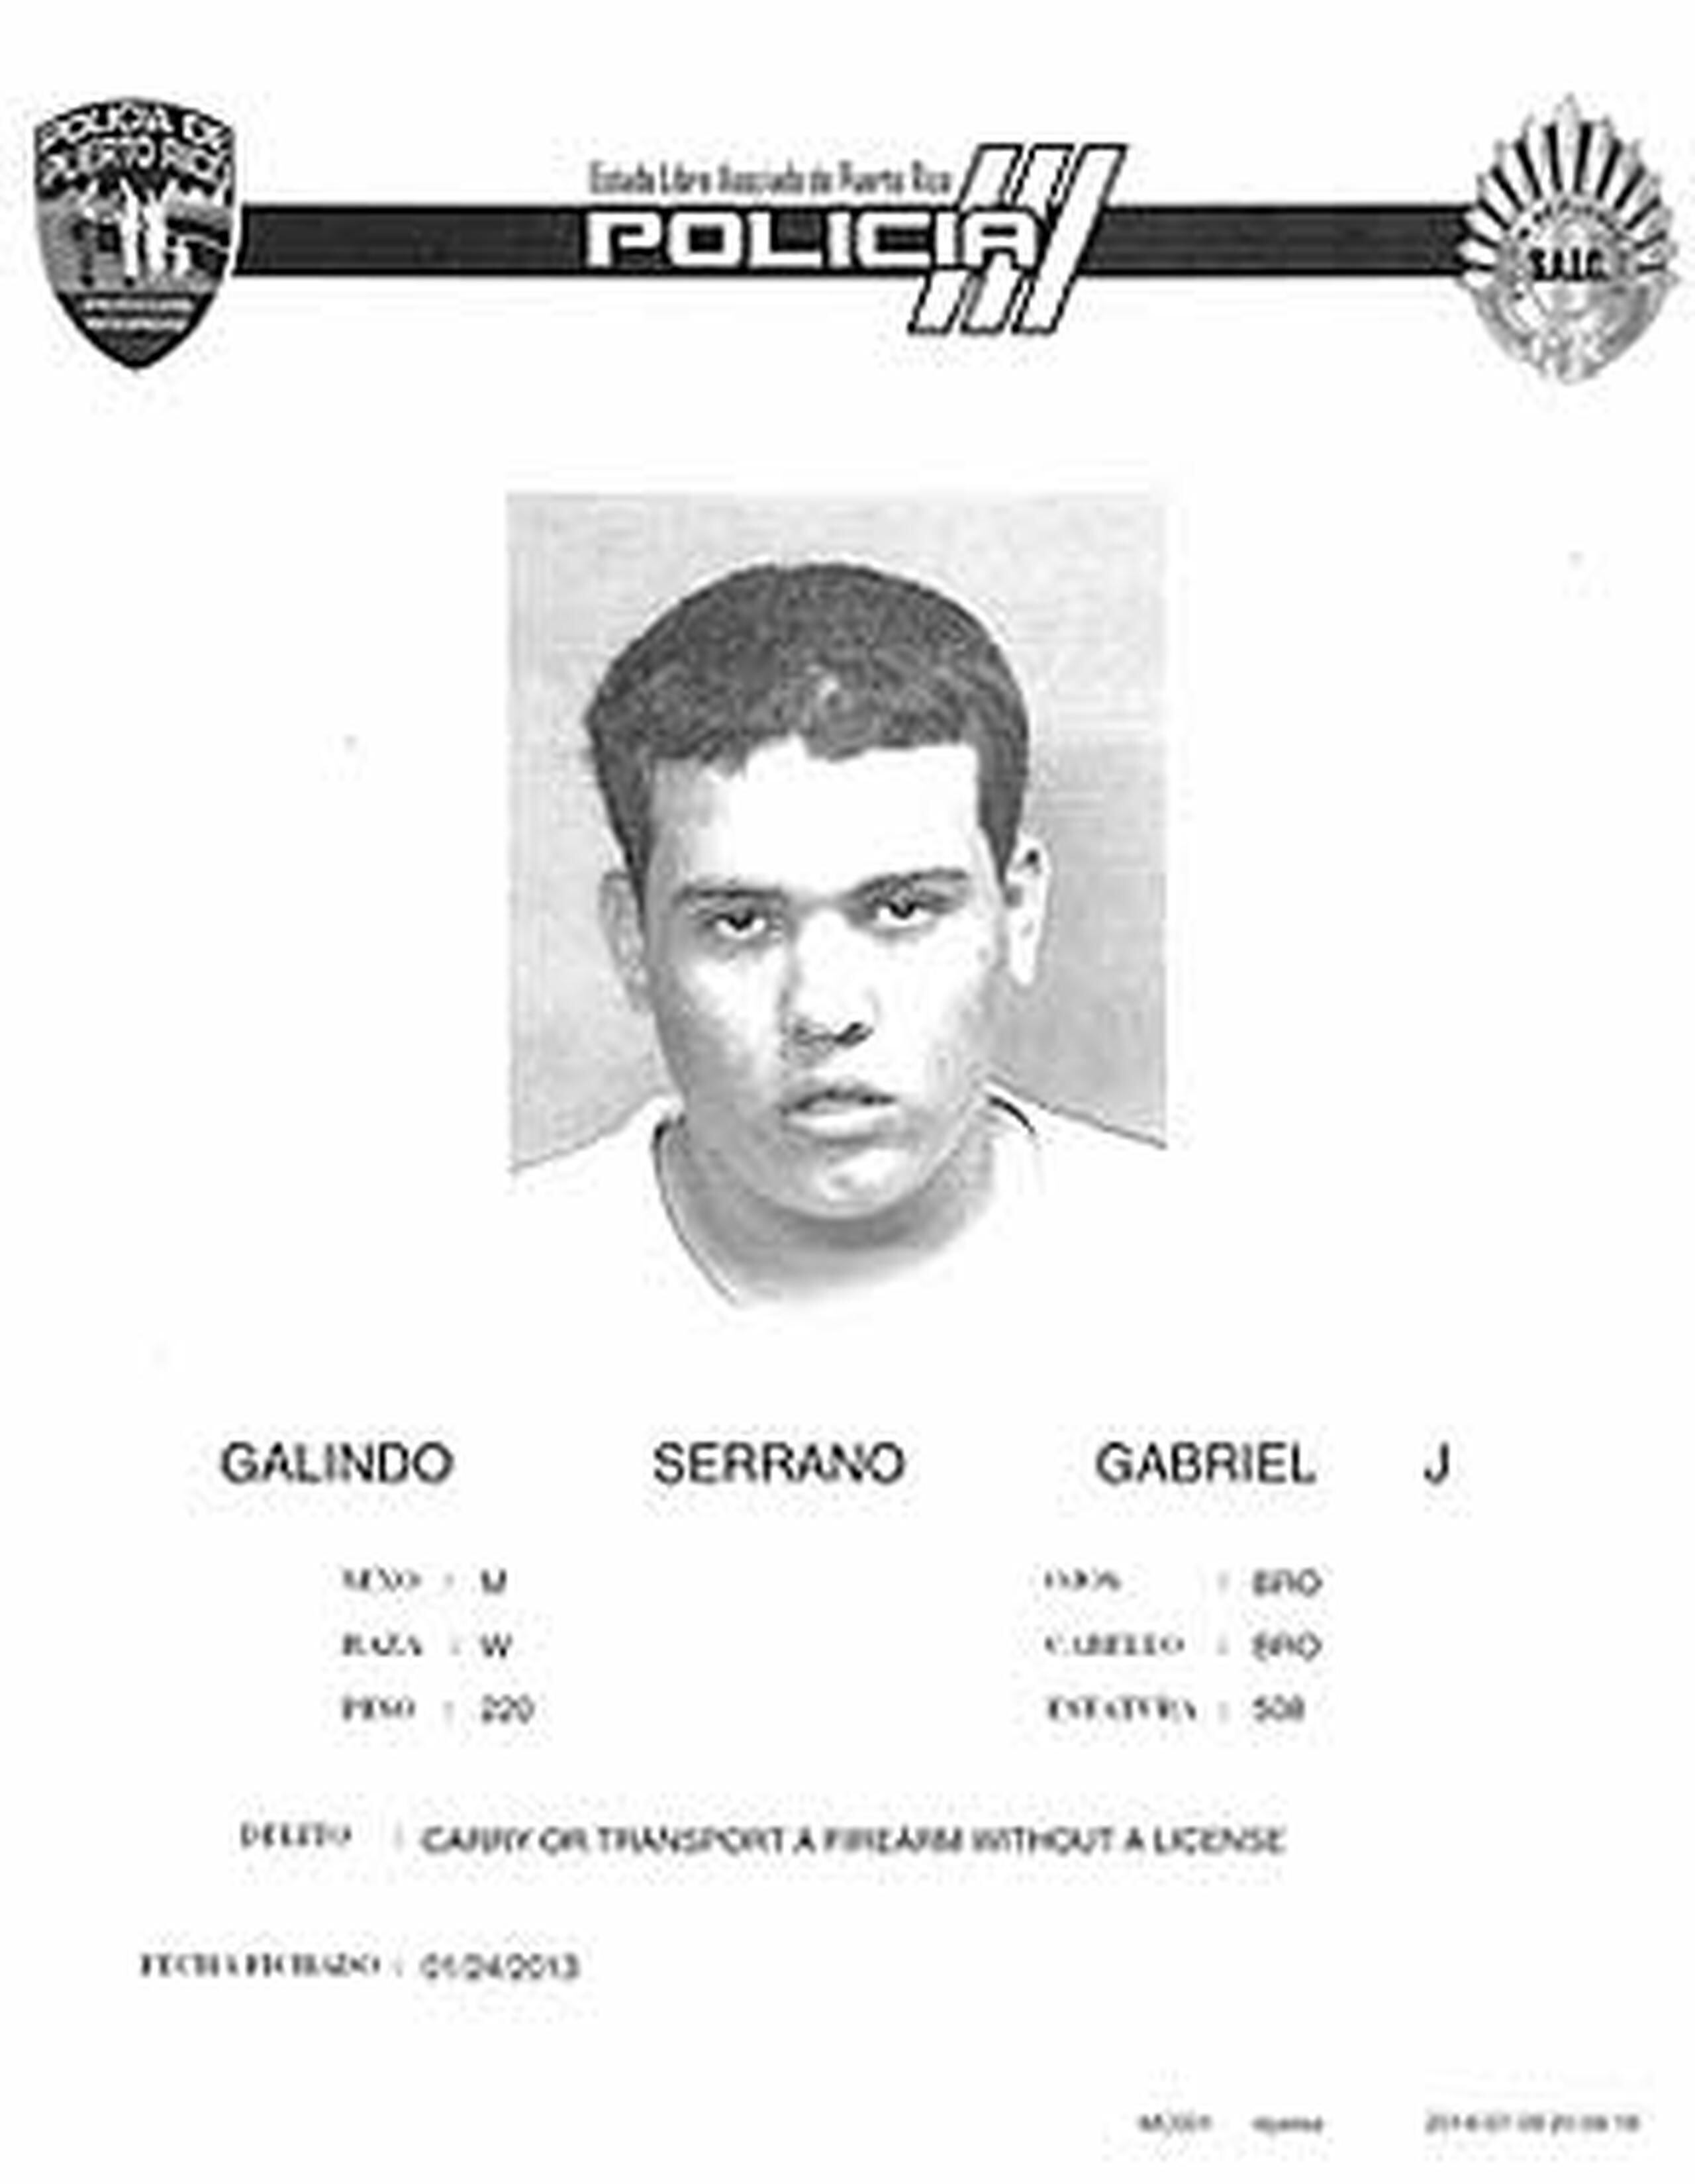 Gabriel Galindo Serrano, de 22 años, tiene expediente criminal previo el año pasado, era investigado por la agencia federal tras estar involucrado en otro “carjacking” ocurrido en el área de Bayamón recientemente. (Suministrada)